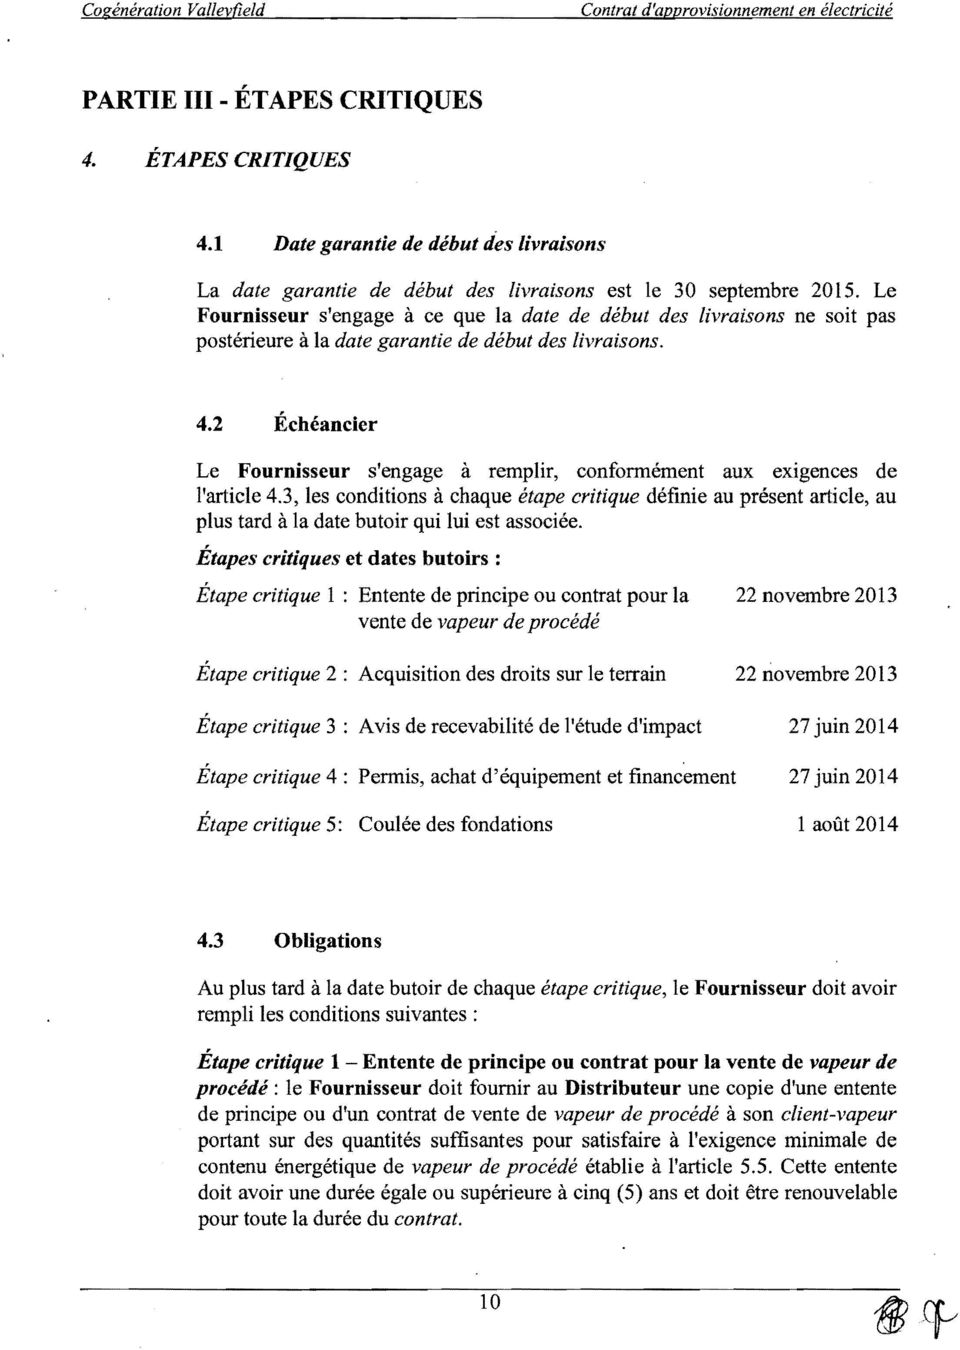 2 Échéancier Le Fournisseur s'engage à remplir, conformément aux exigences de l'article 4.